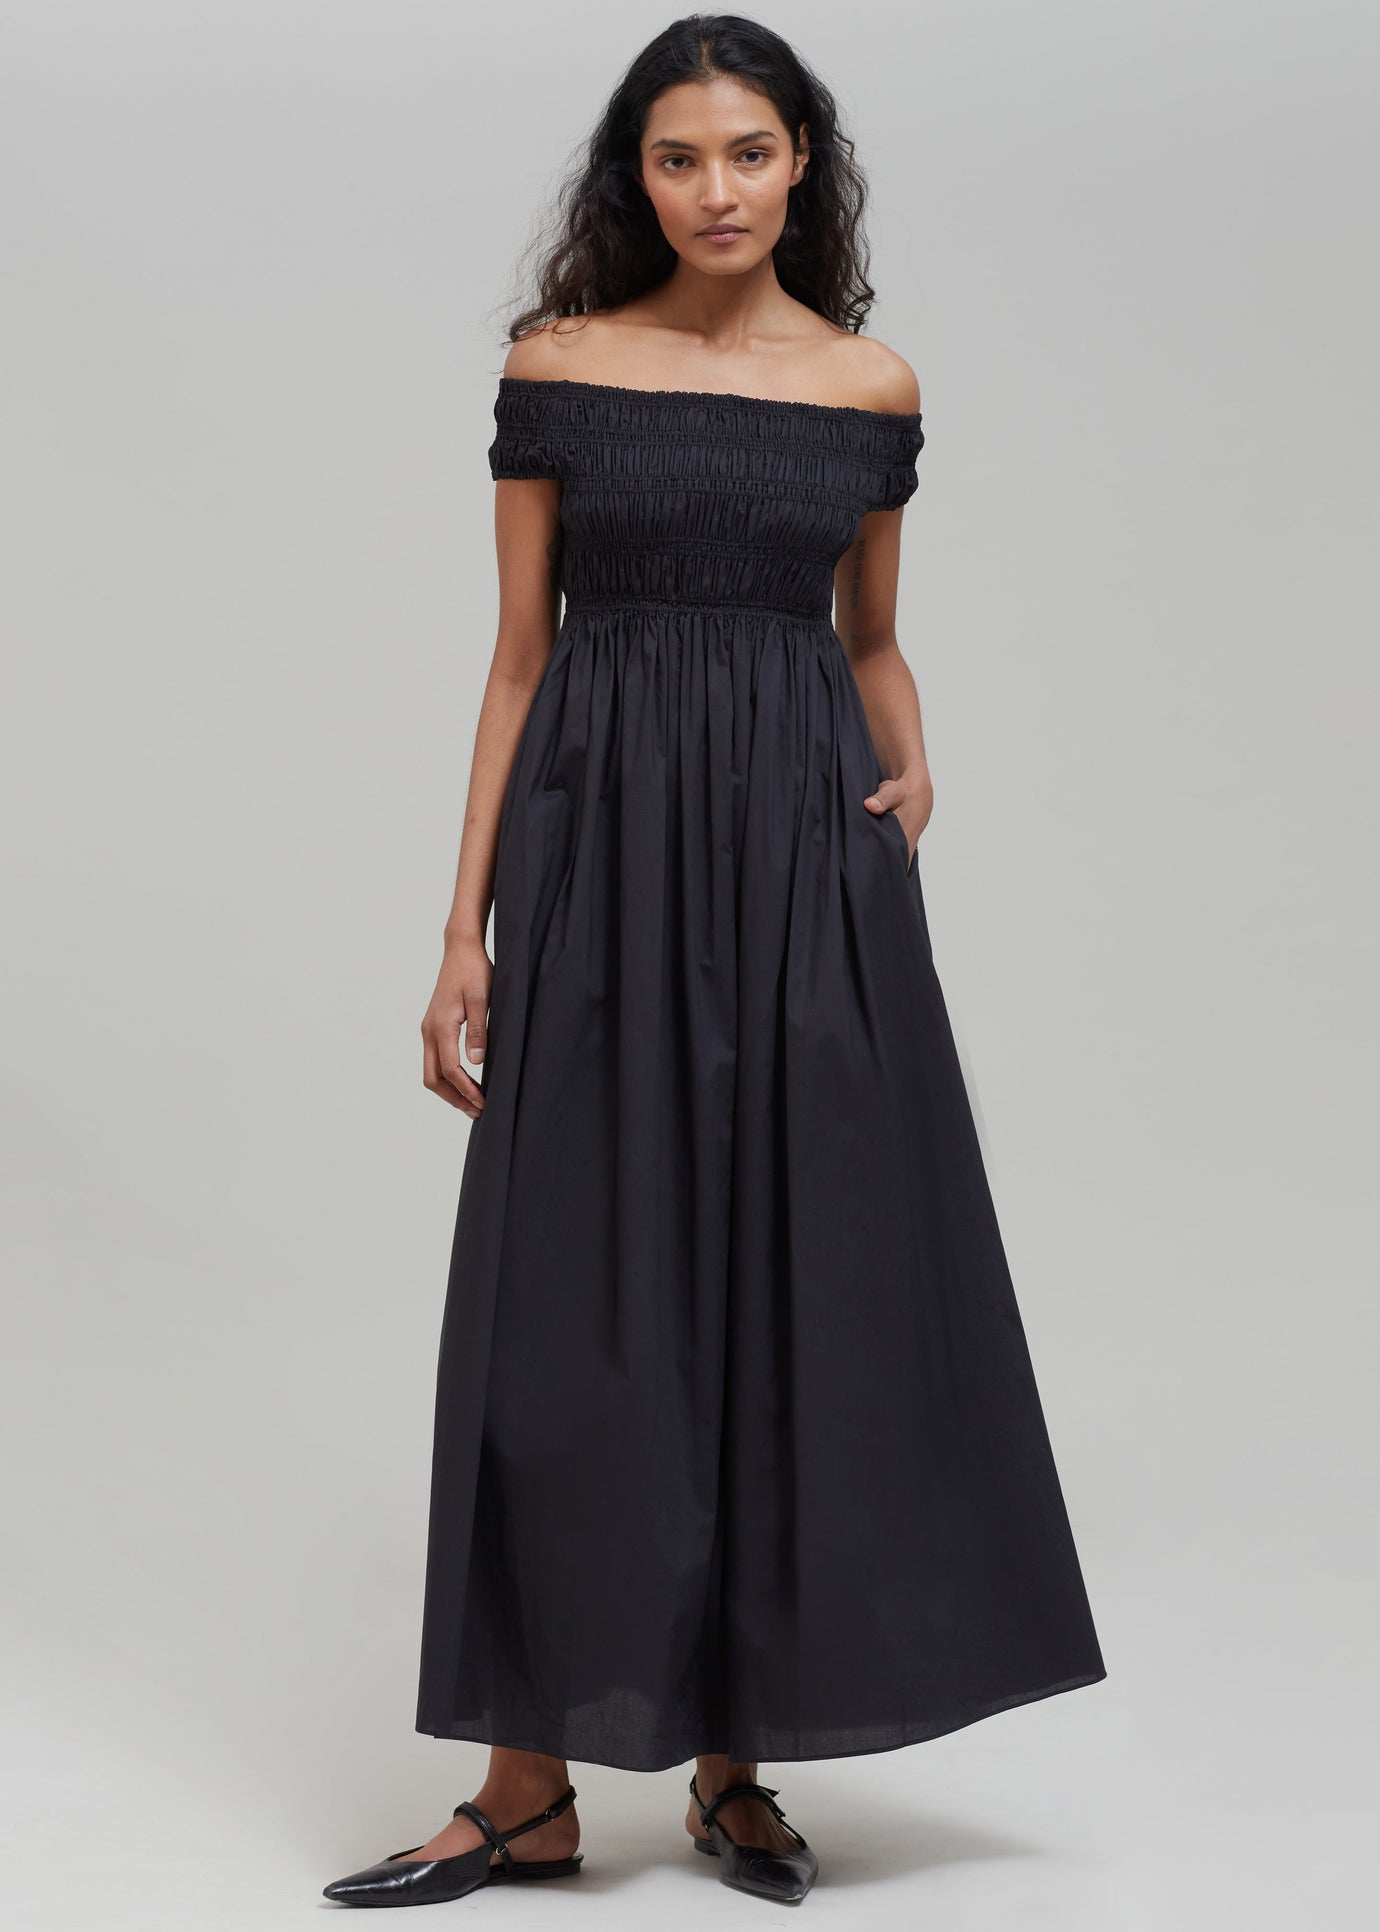 Matteau Shirred Off The Shoulder Dress - Black